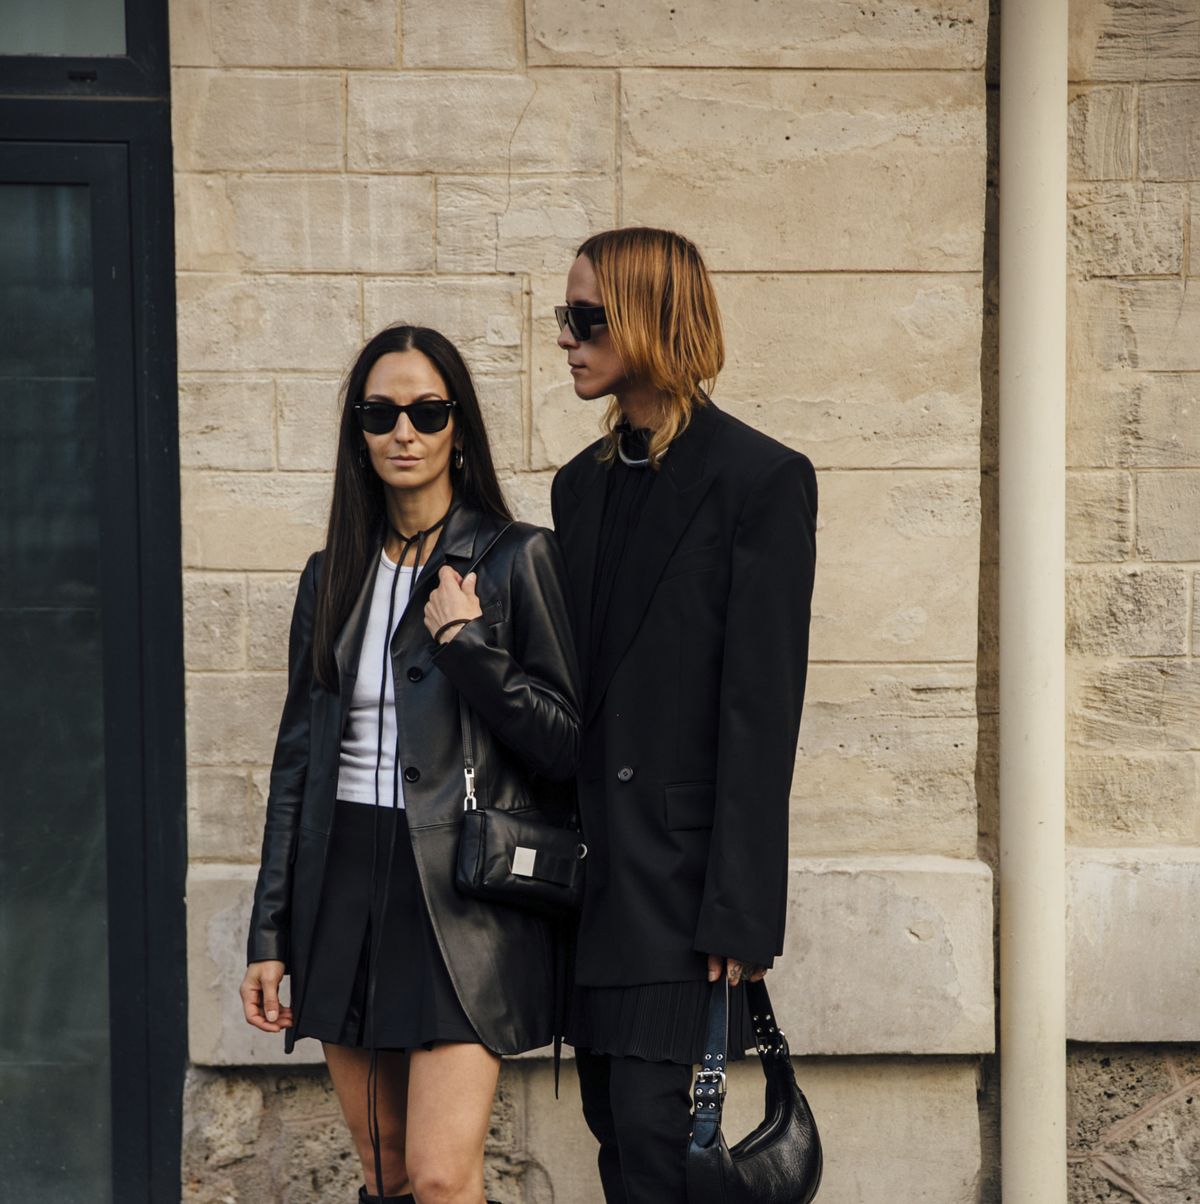 La nueva colección de Zara para volver al otoño con: looks parisinos